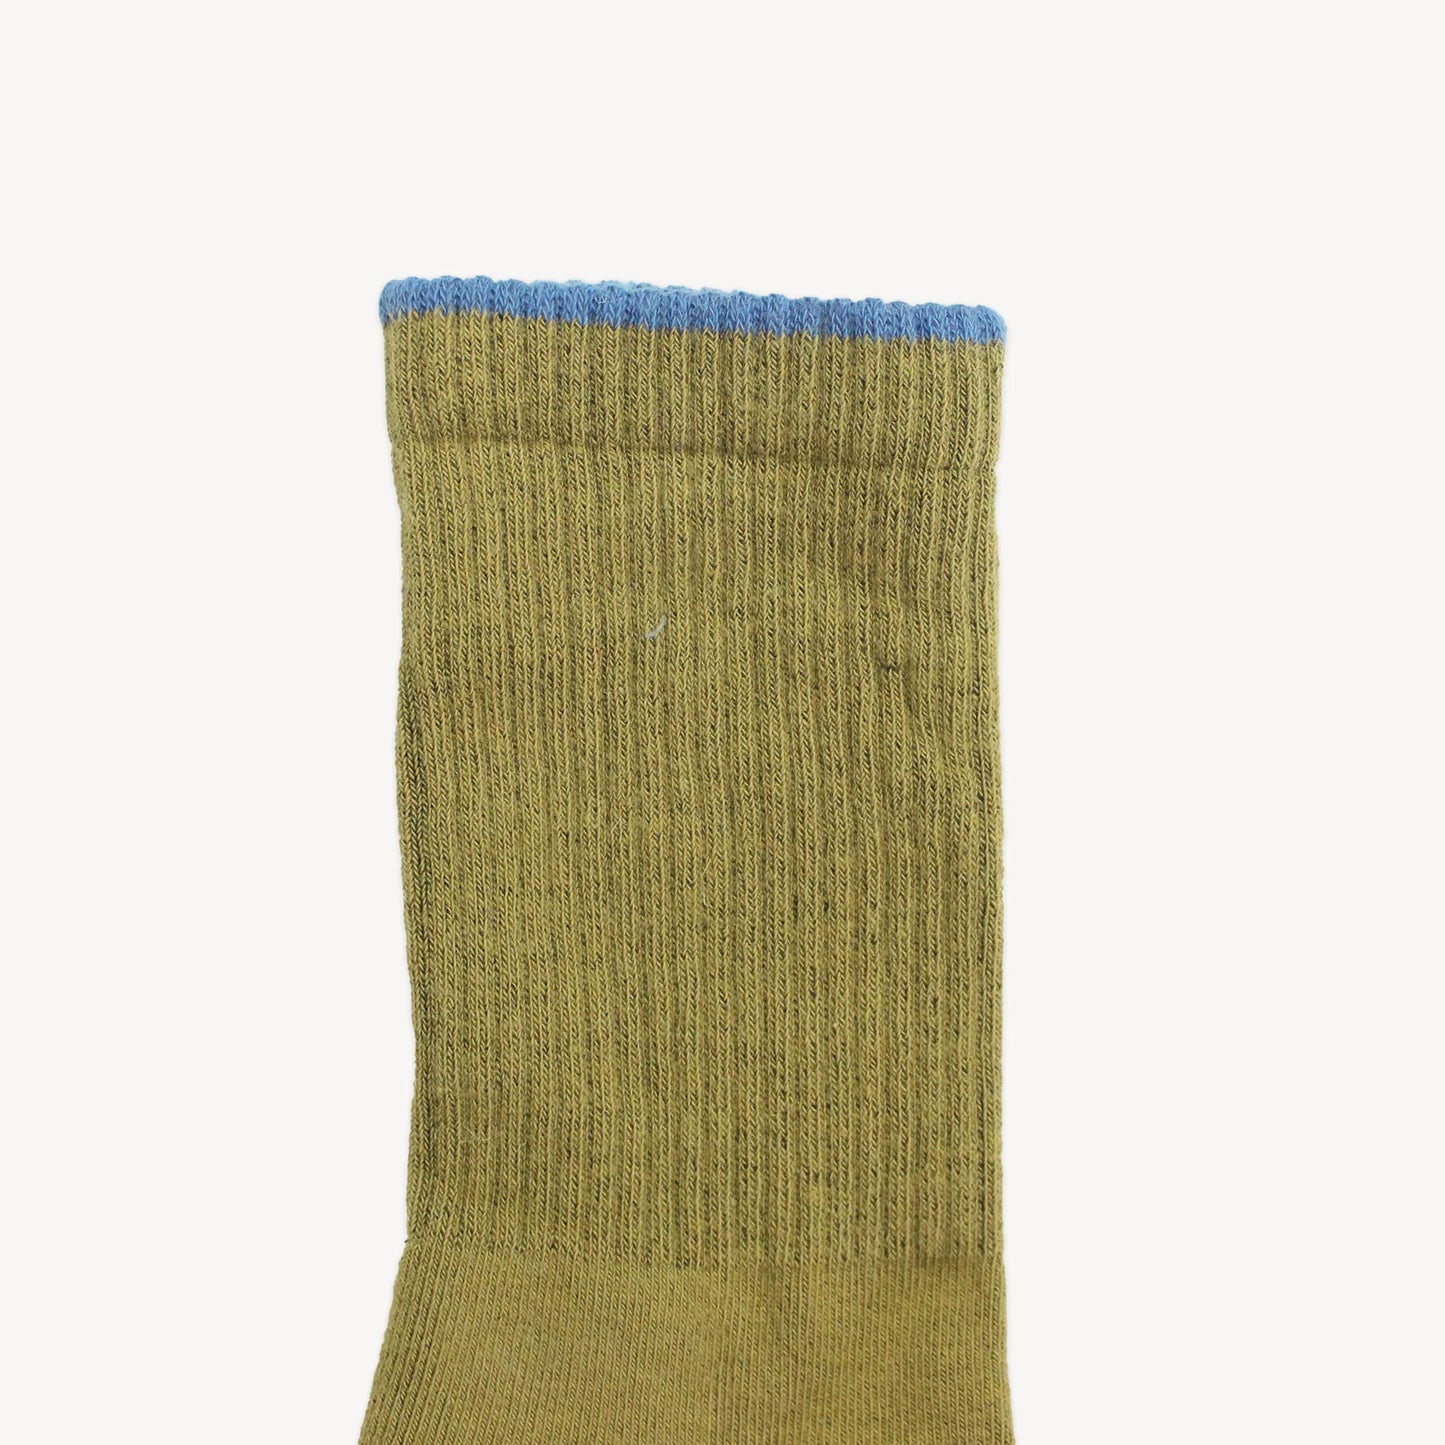 Pack of 2 Heel Toe Socks - Brown Blue